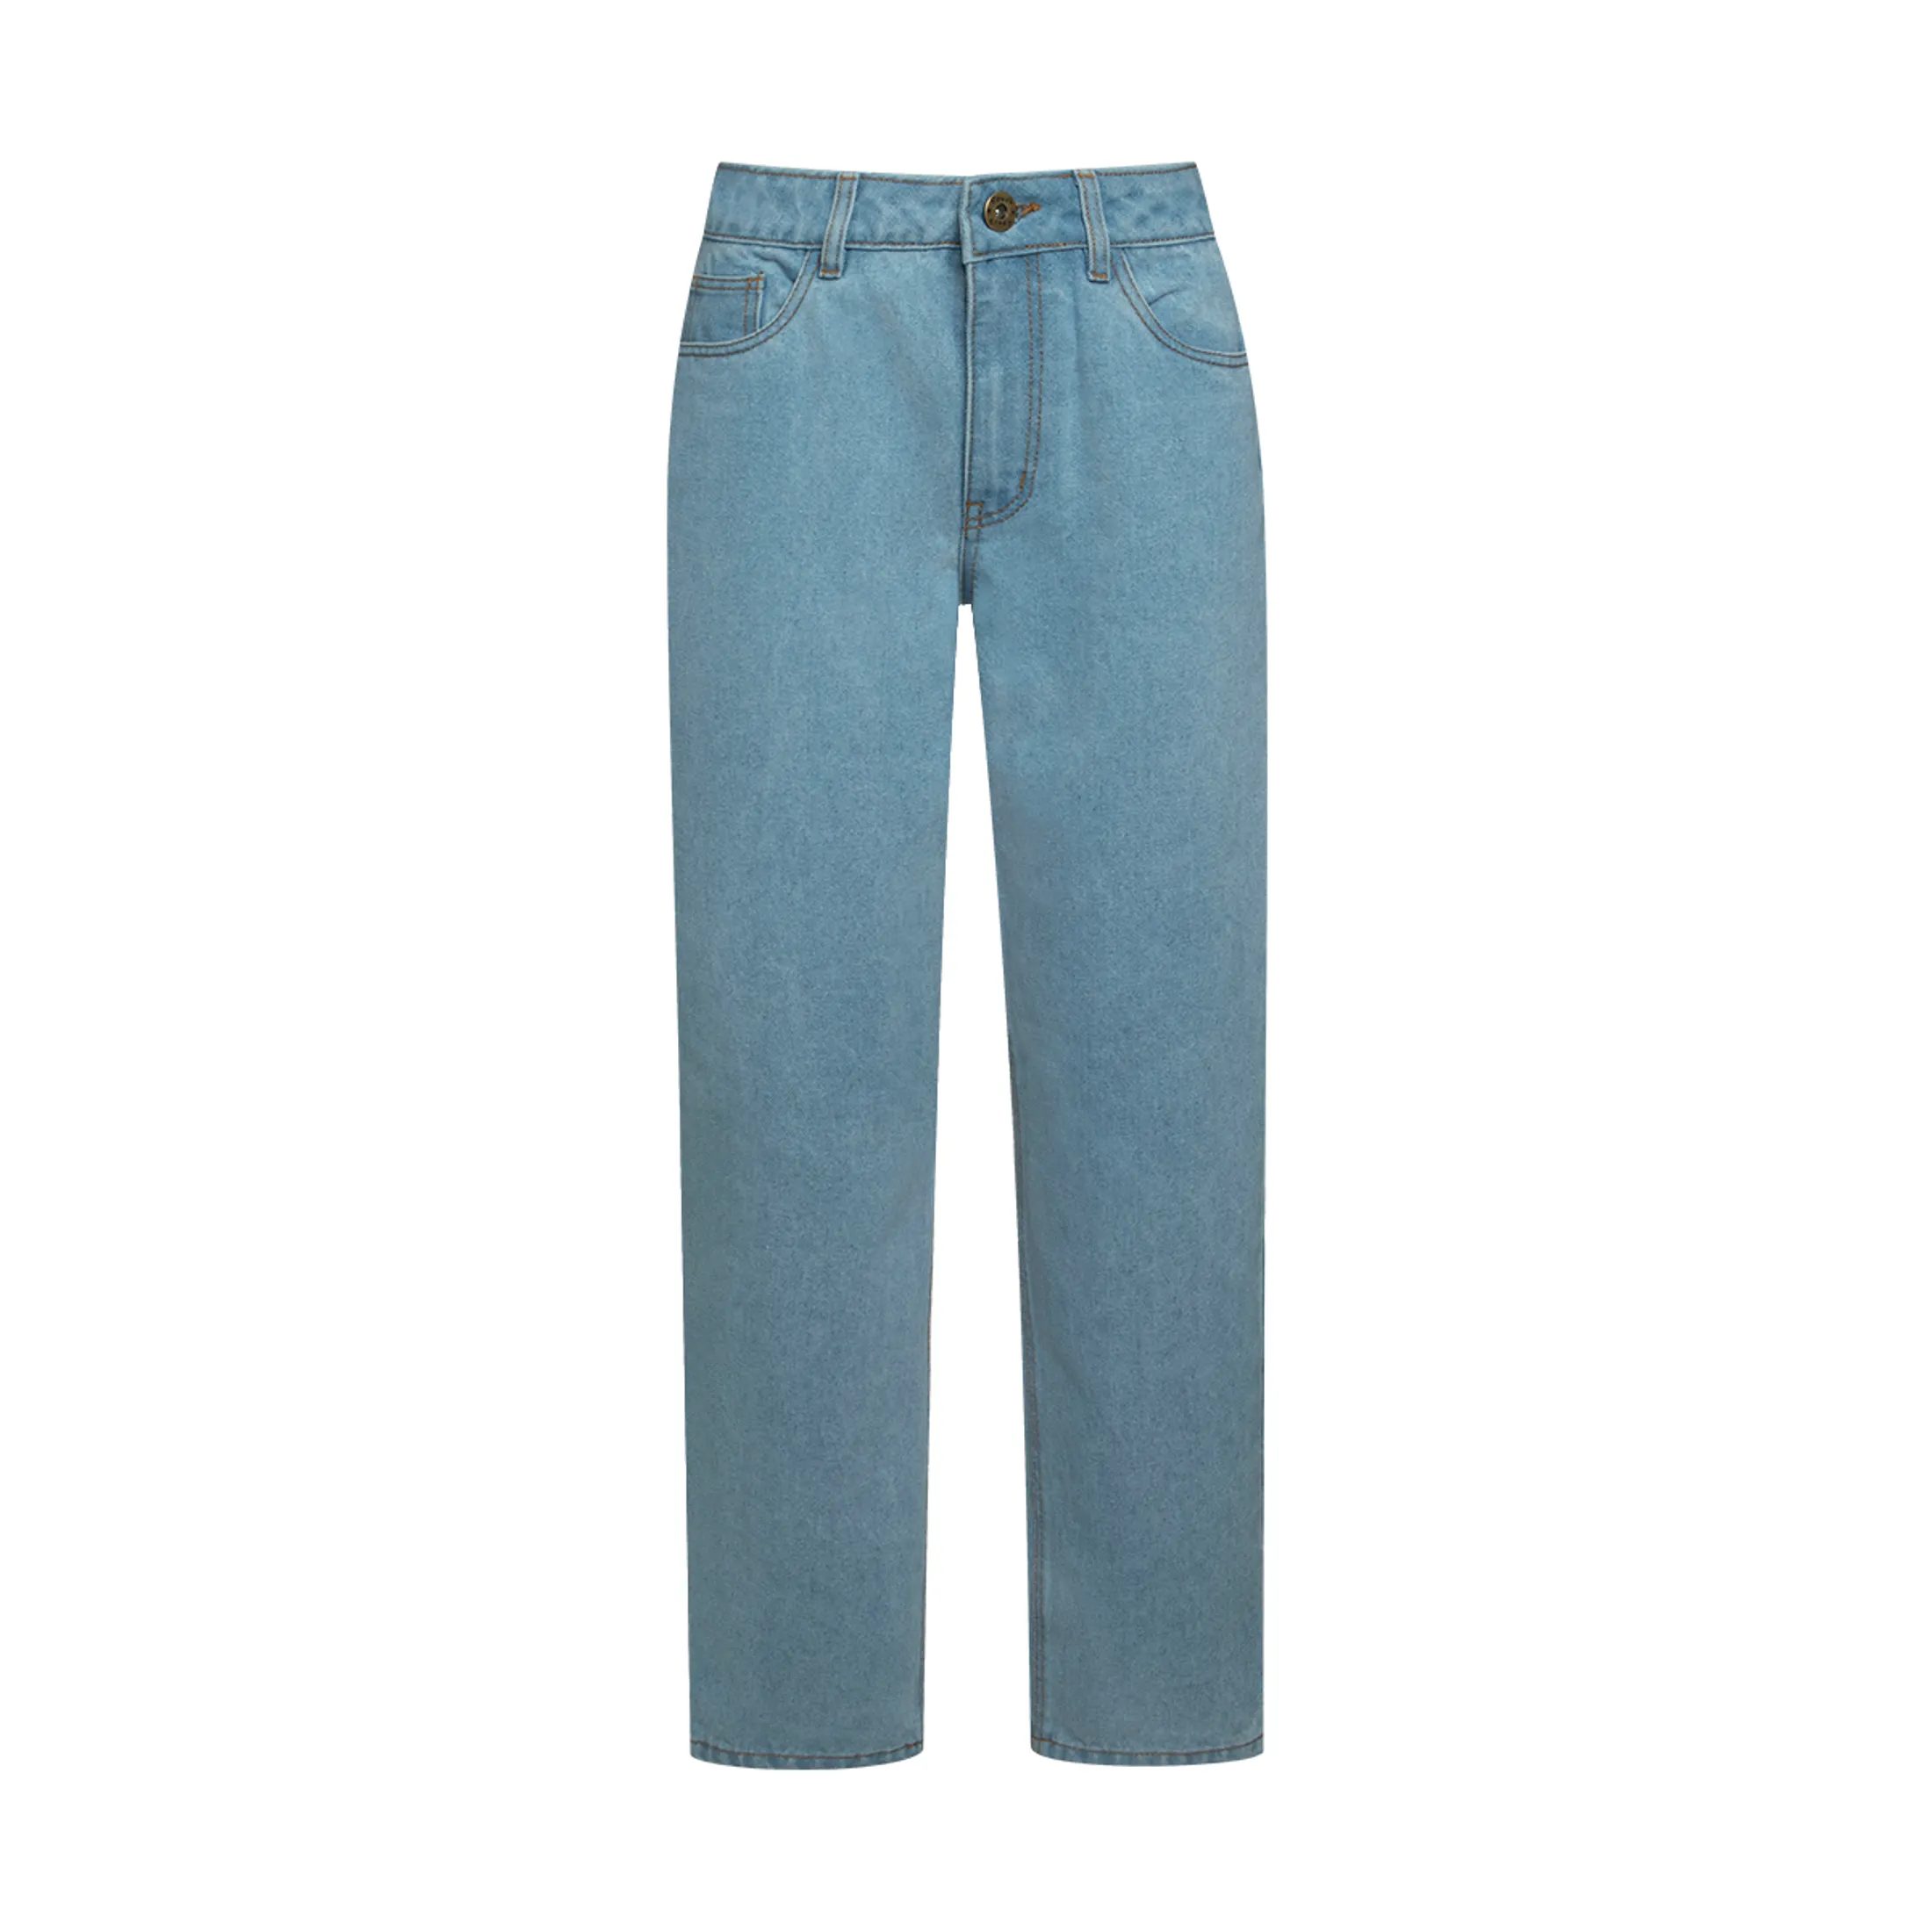 Shop Women's Denim Jeans online at Ackermans